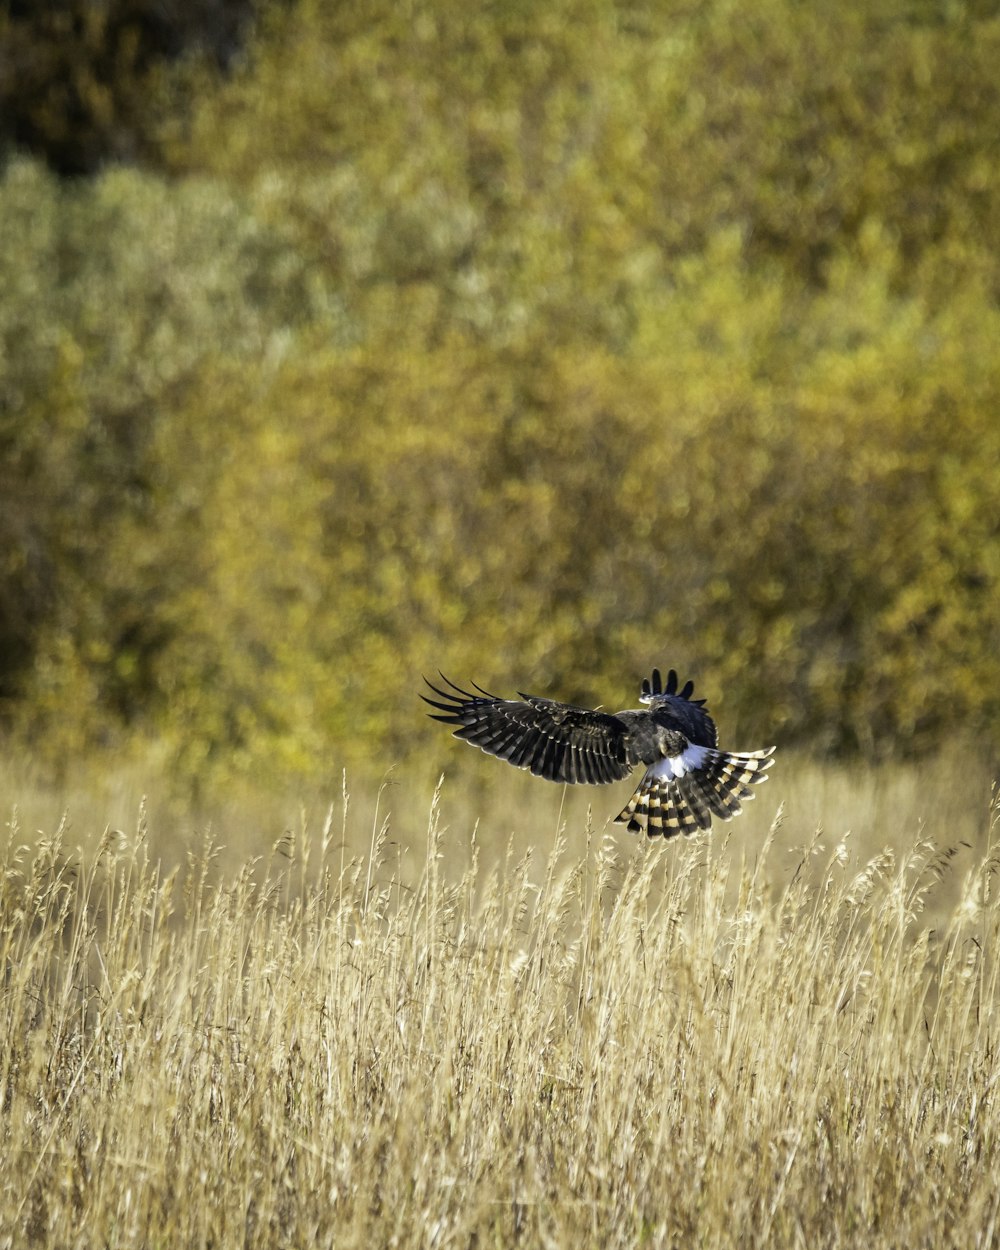 pássaro preto e branco voando sobre o campo de grama marrom durante o dia